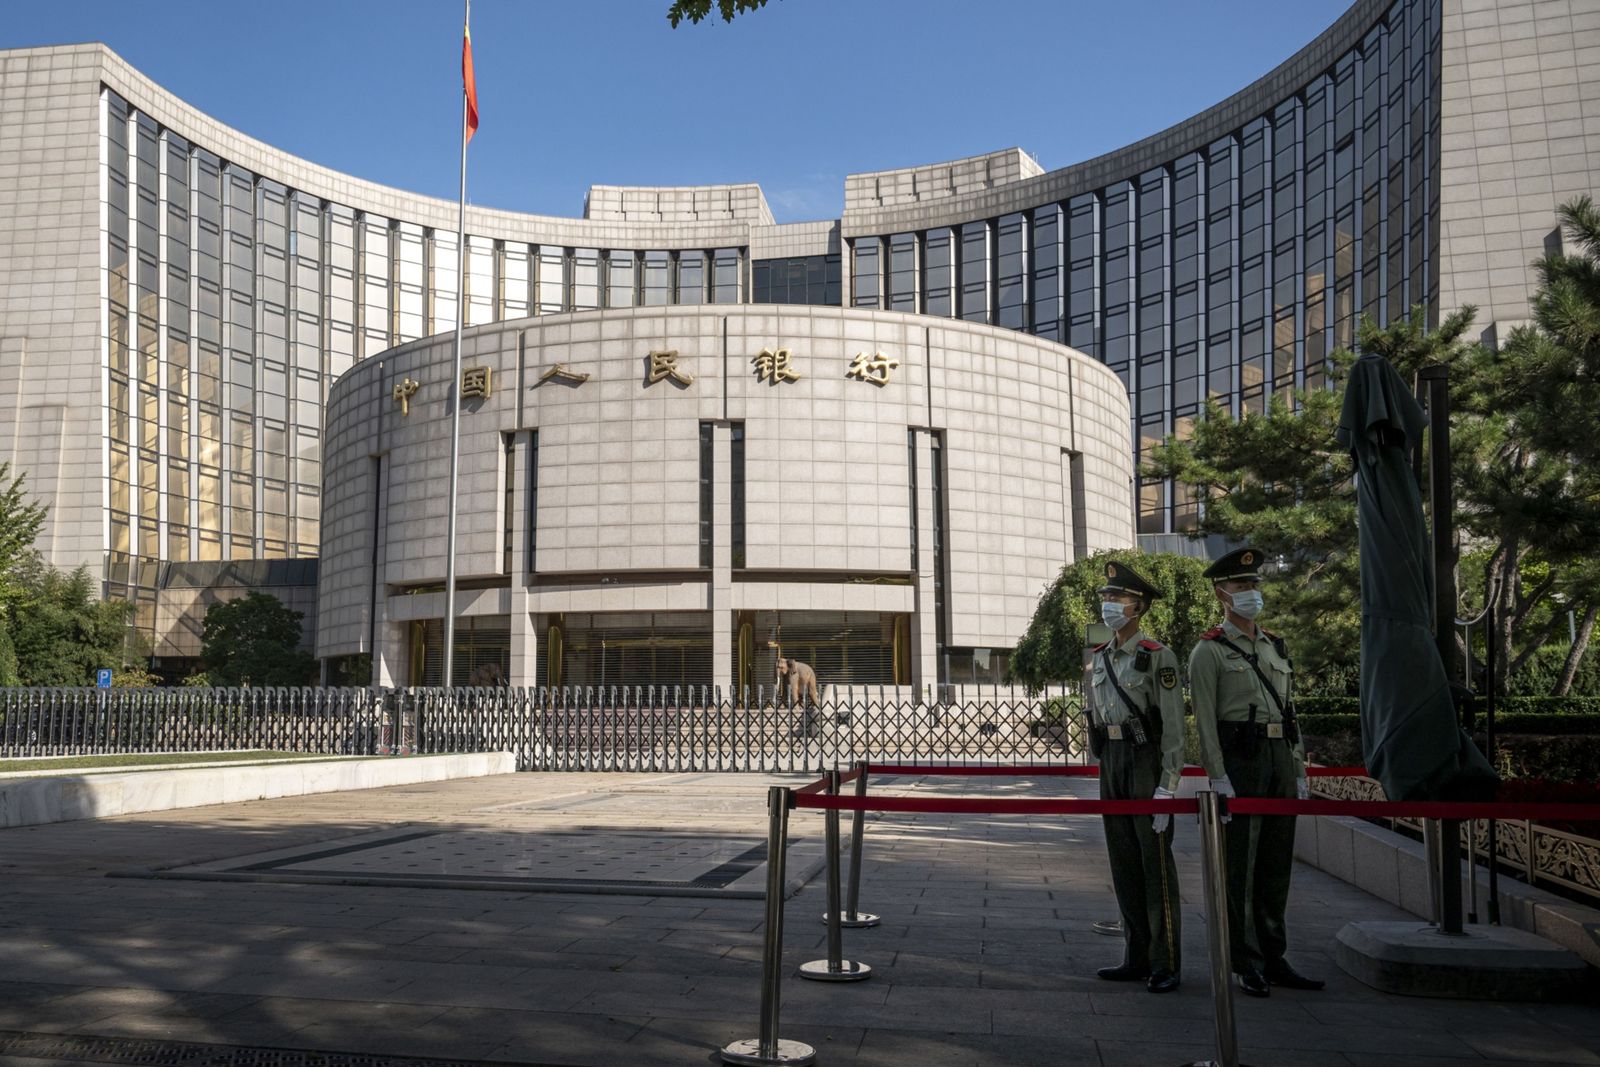 خبراء يتوقعون بدء التيسير النقدي في الصين مع تزايد الضغوط الاقتصادية